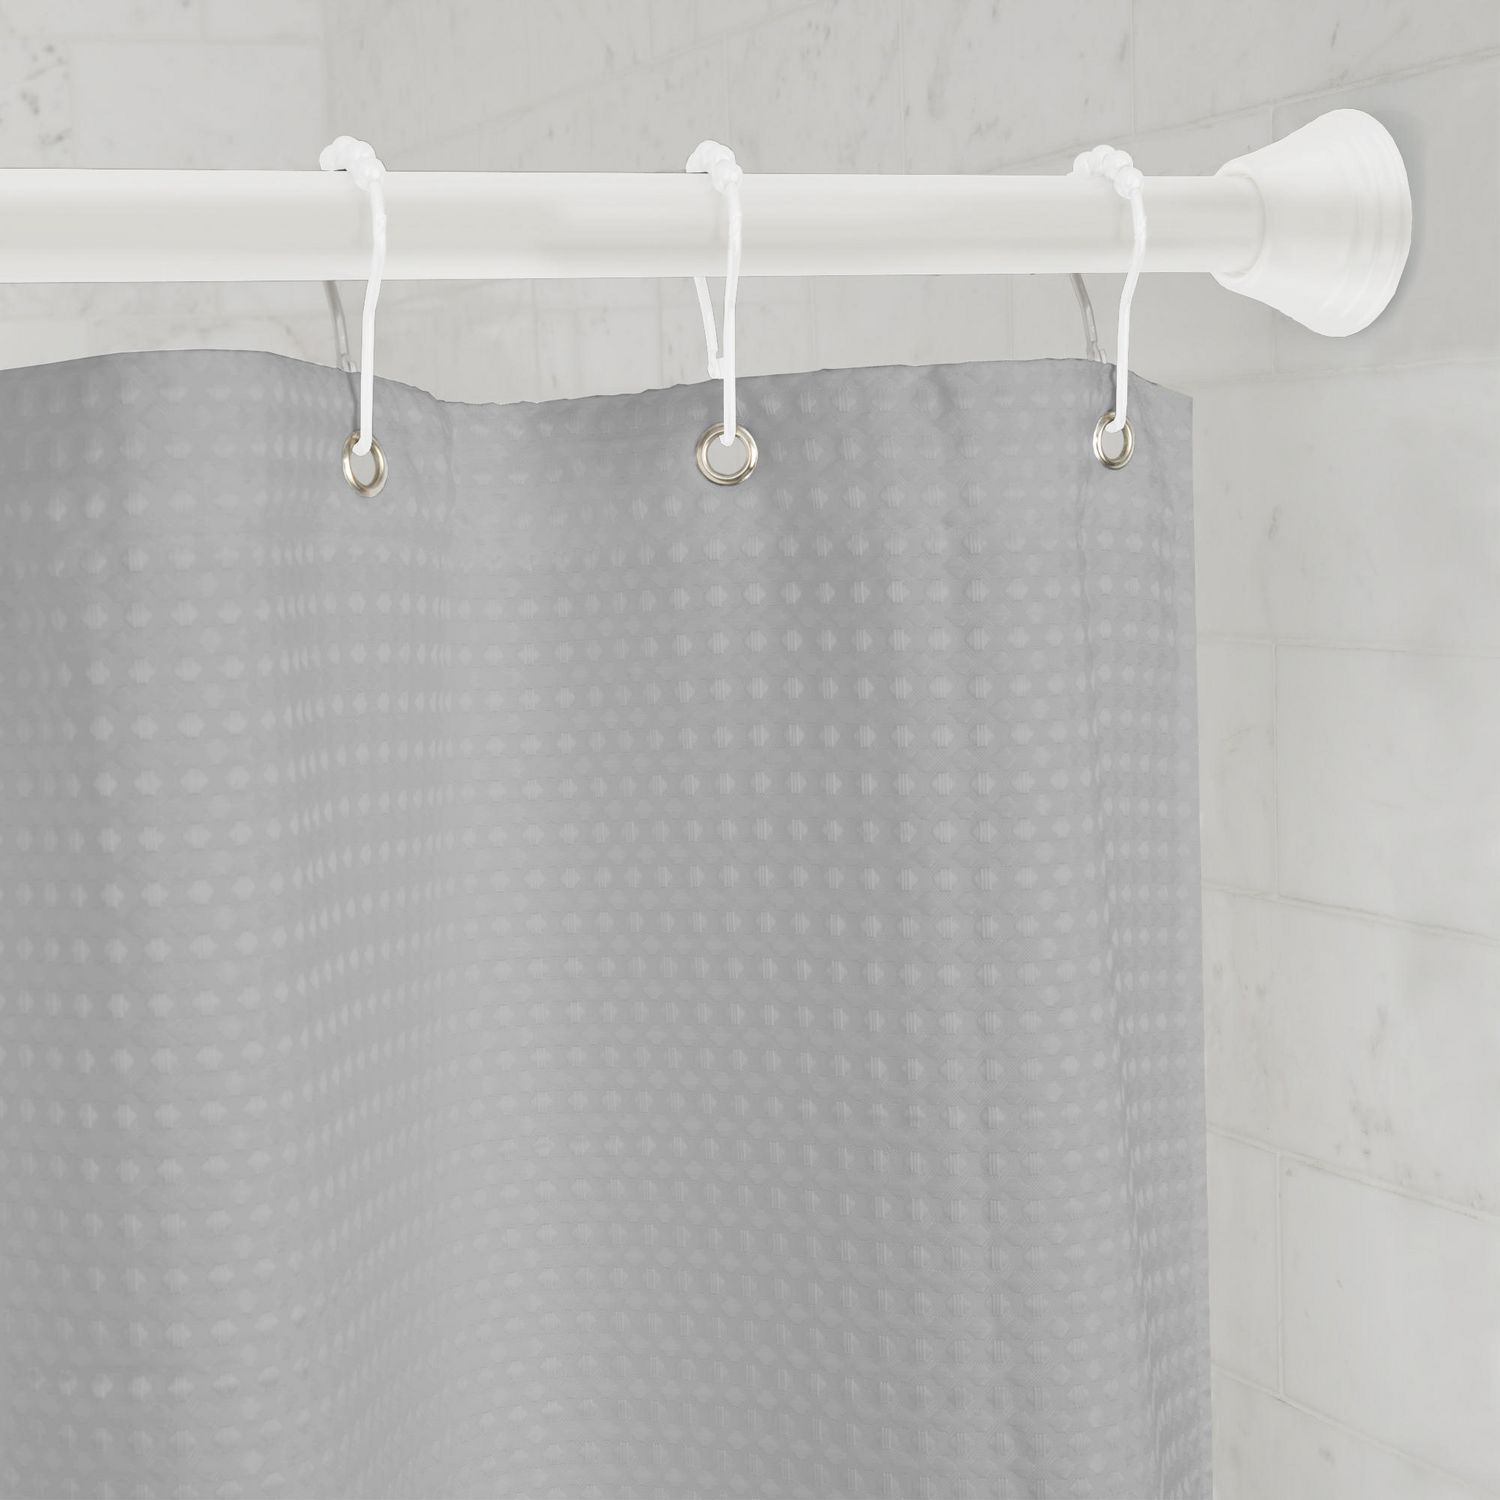 Tringle à rideau de douche incurvée double réglable Smart Rods de  Mainstays, nickel brossé 1 tringle à rideau de douche 